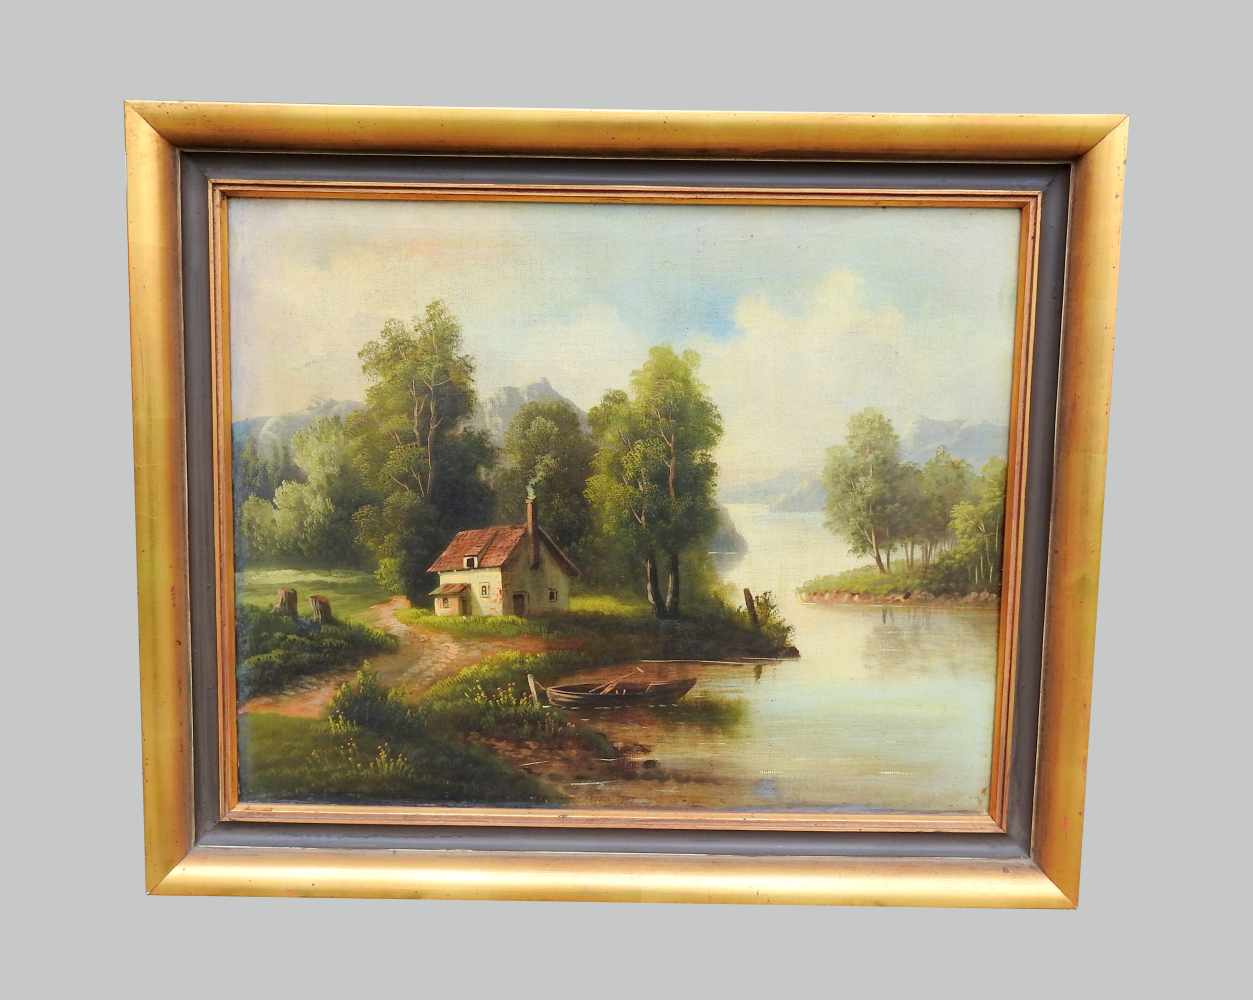 LandschaftsgemäldeÖl/Leinwand. An einem See steht ein kleines Haus mit rauchendem Ka - Image 2 of 5